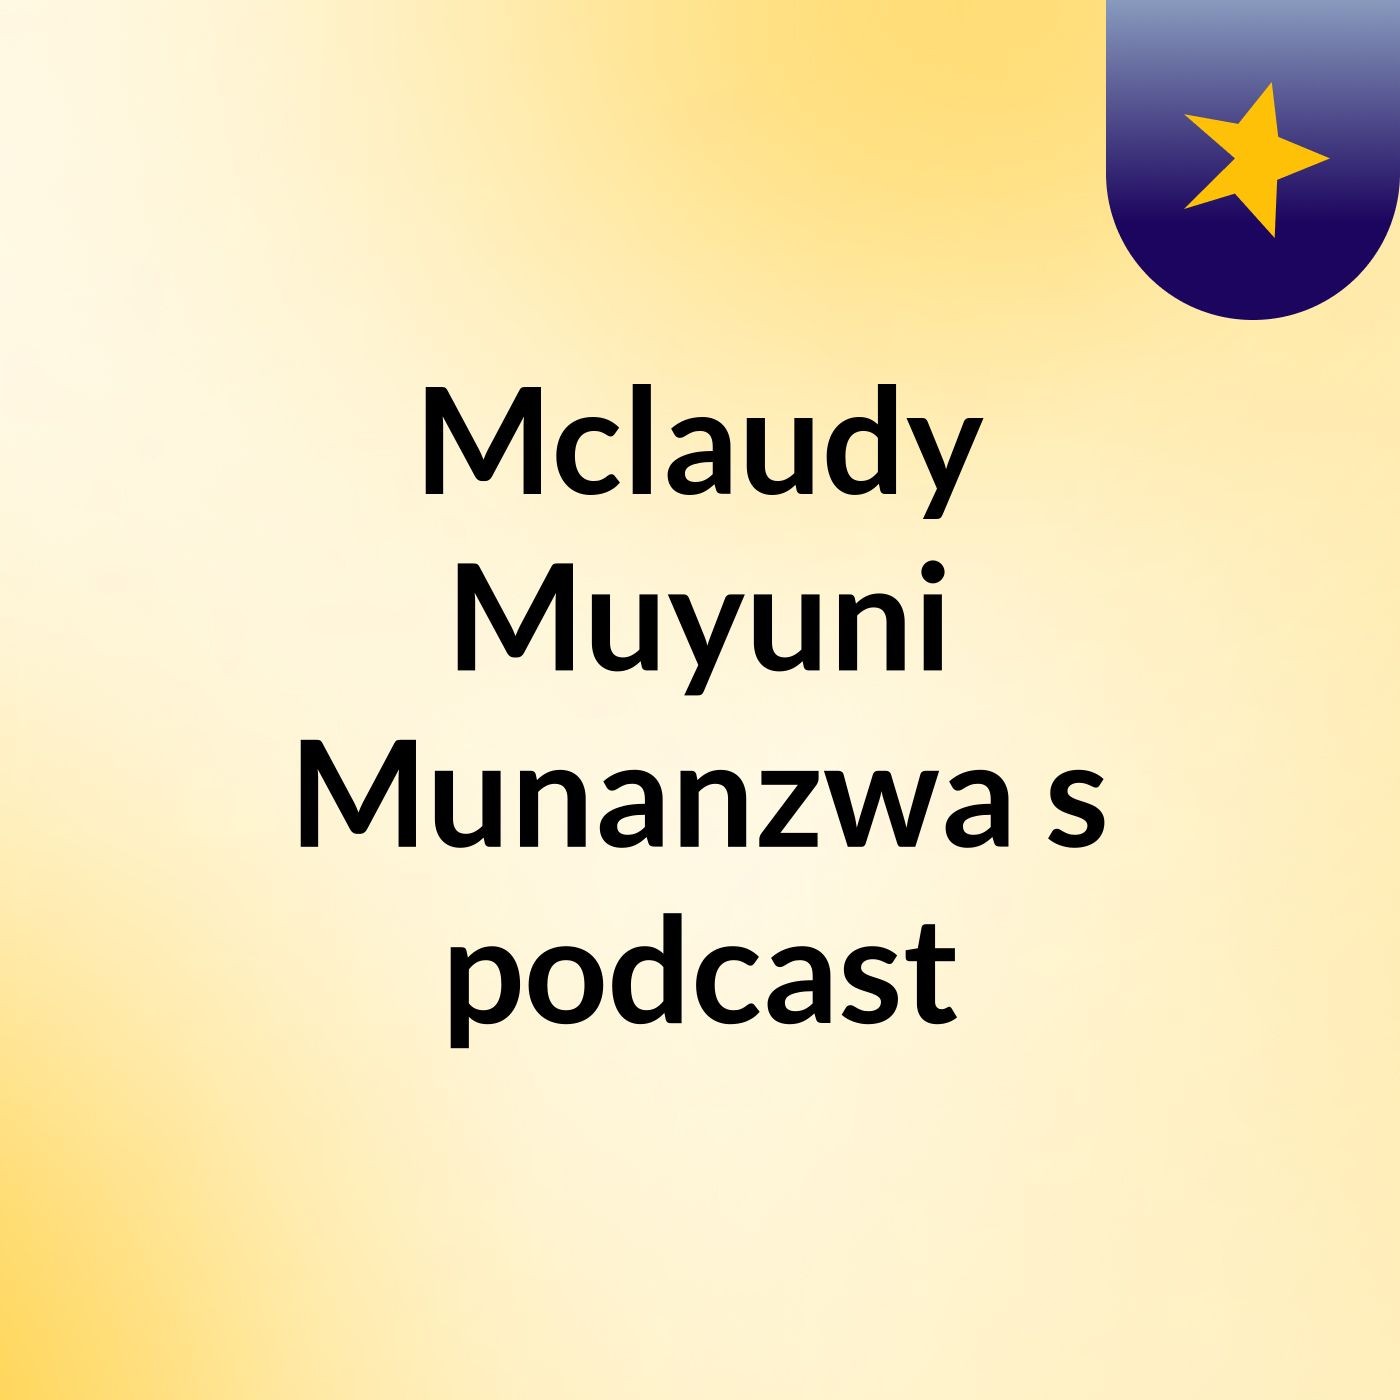 Episode 7 - Mclaudy Muyuni Munanzwa's podcast